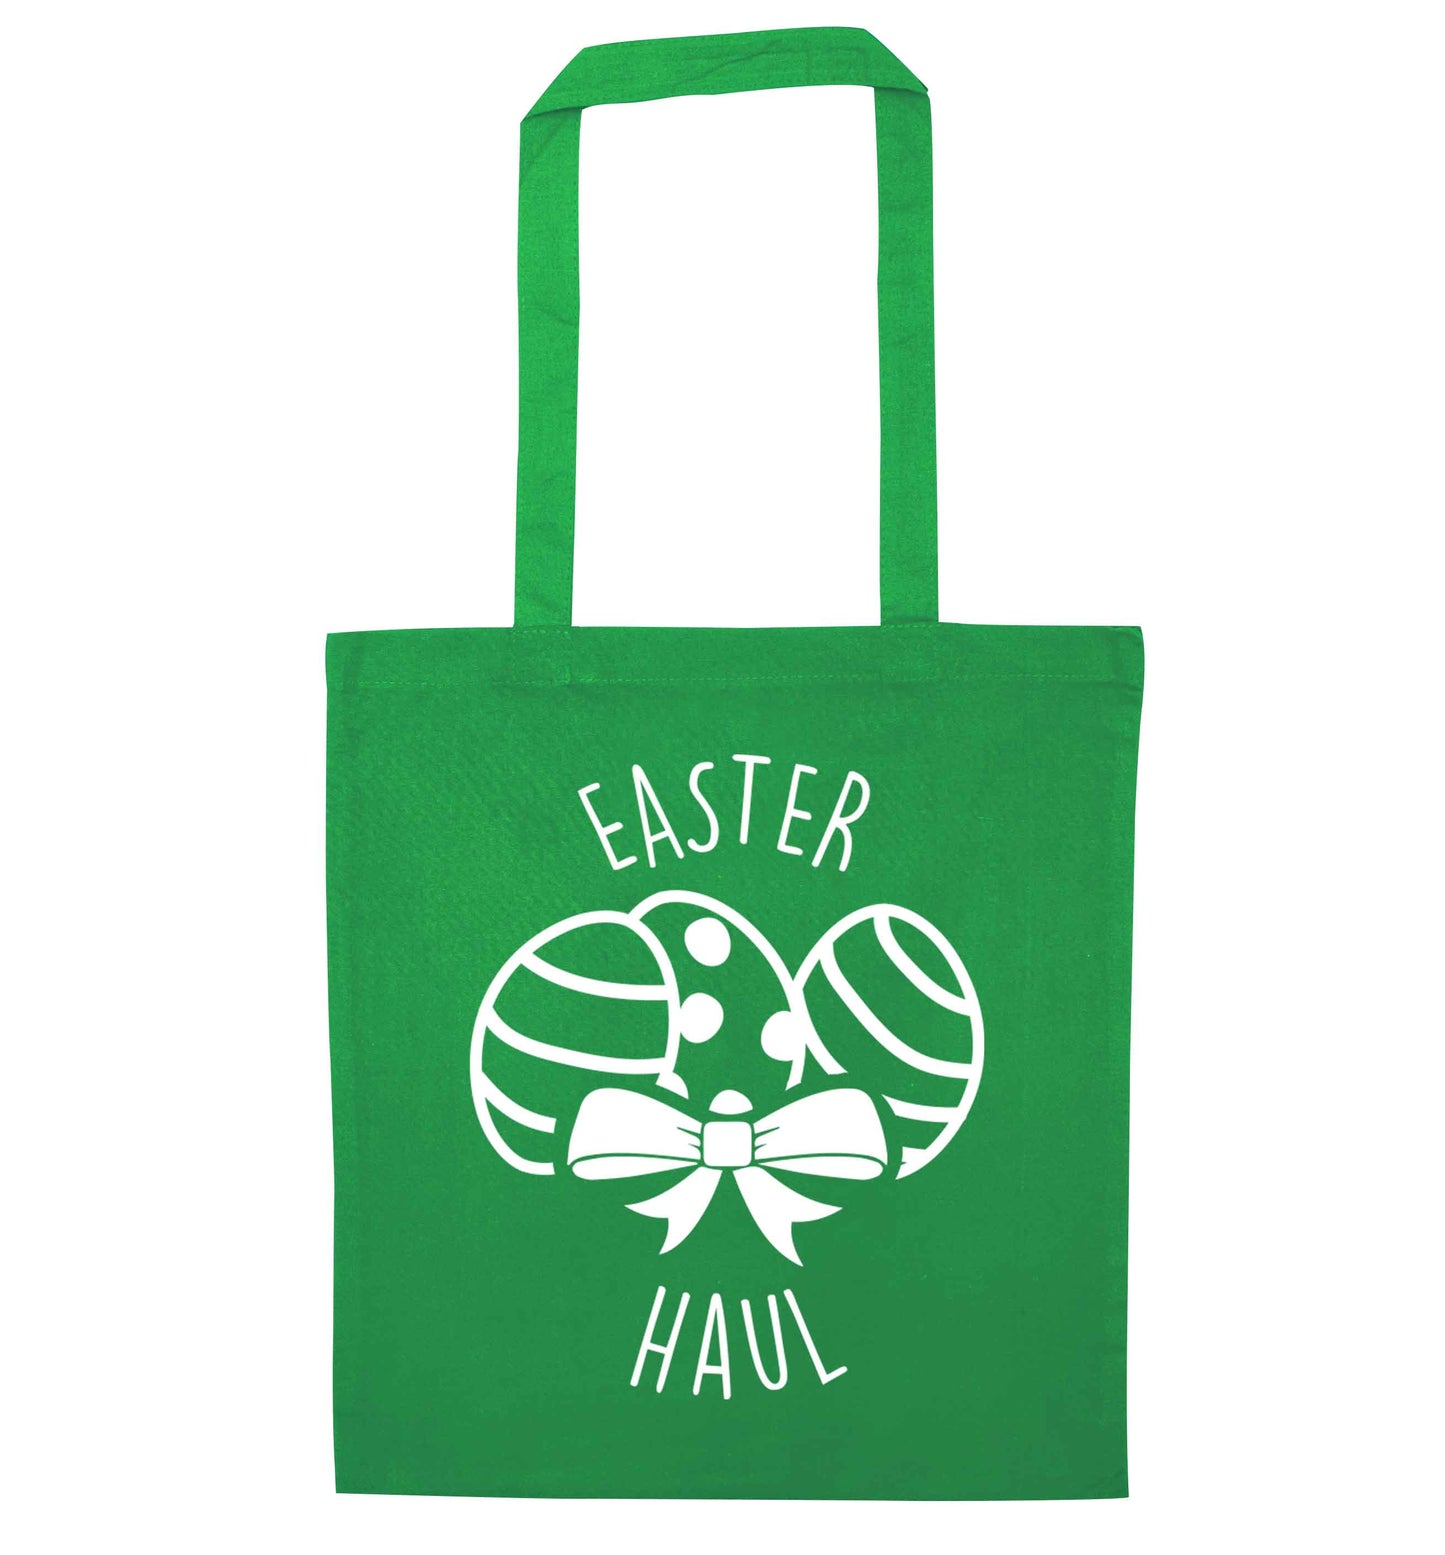 Easter haul green tote bag